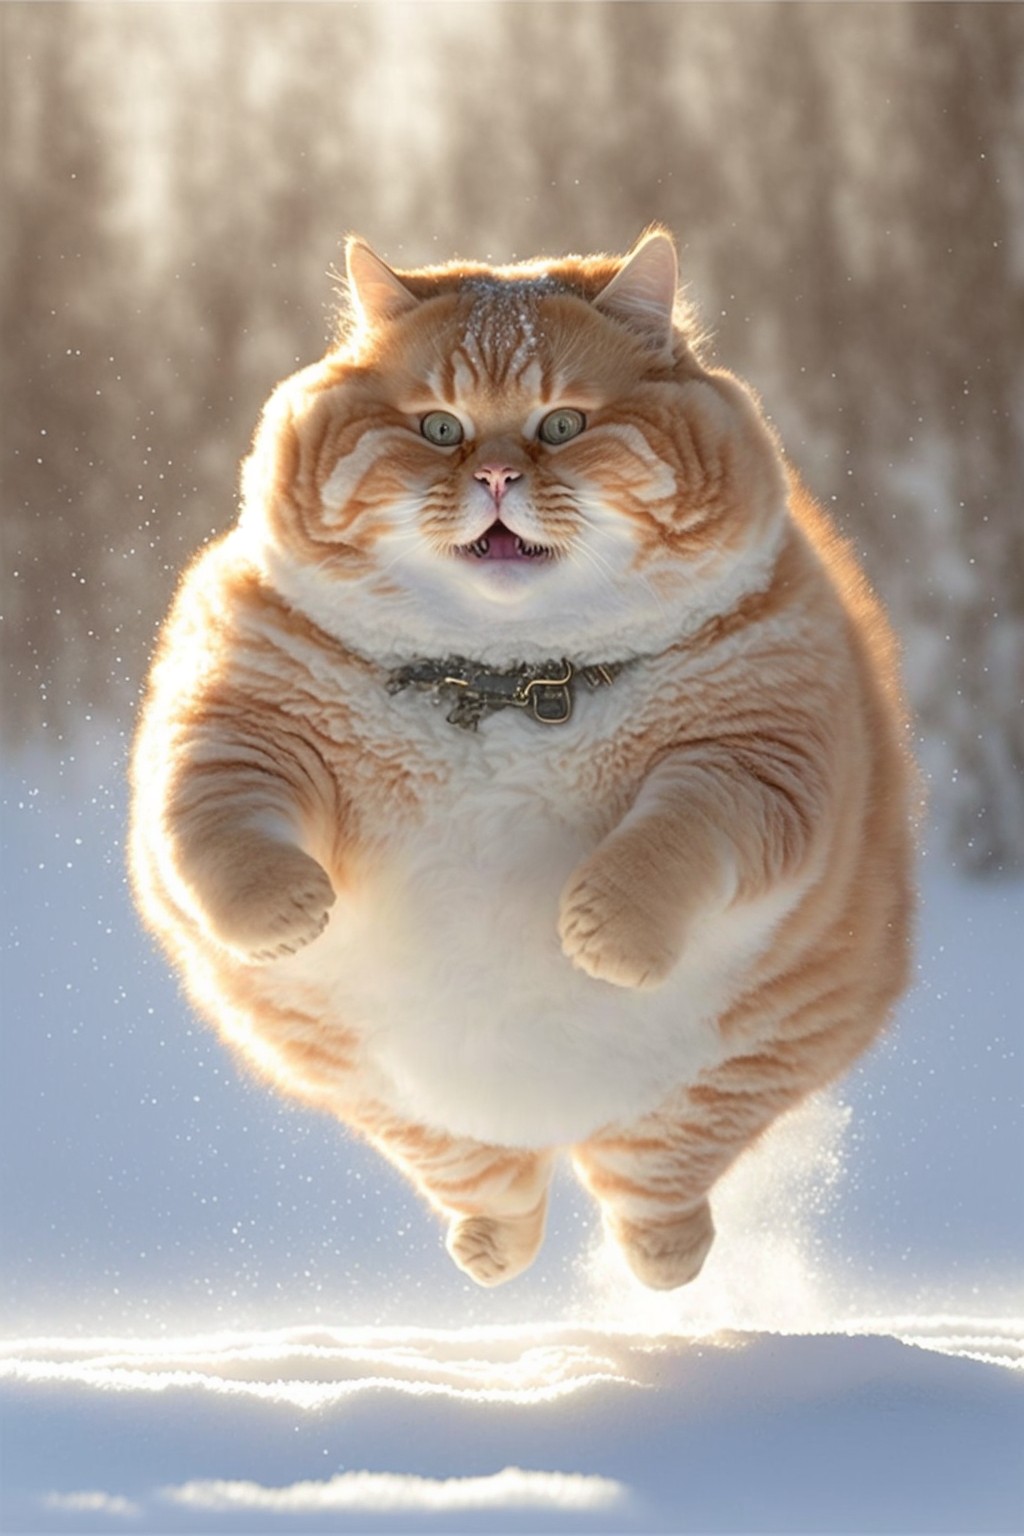 A cute big fat cat